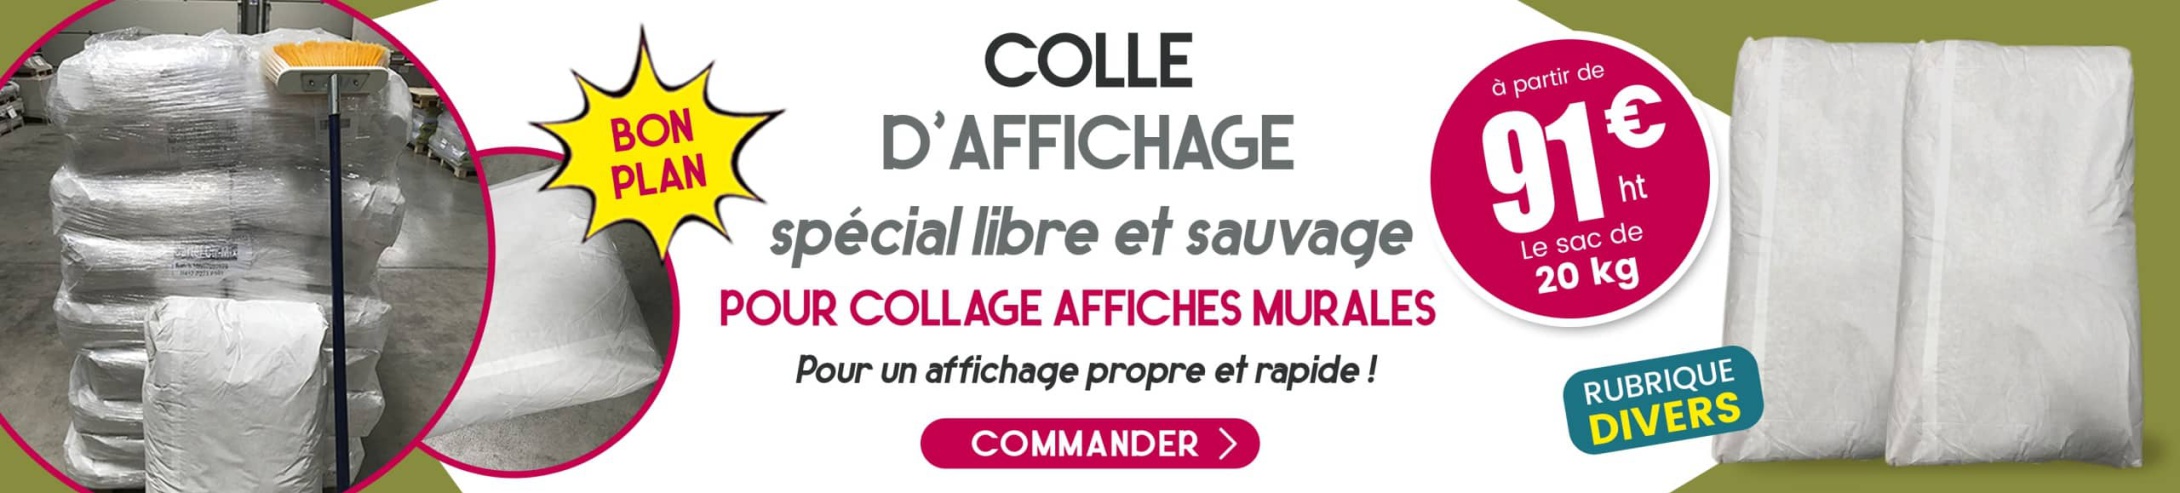 COLLE AFFICHAGE CIRQUE